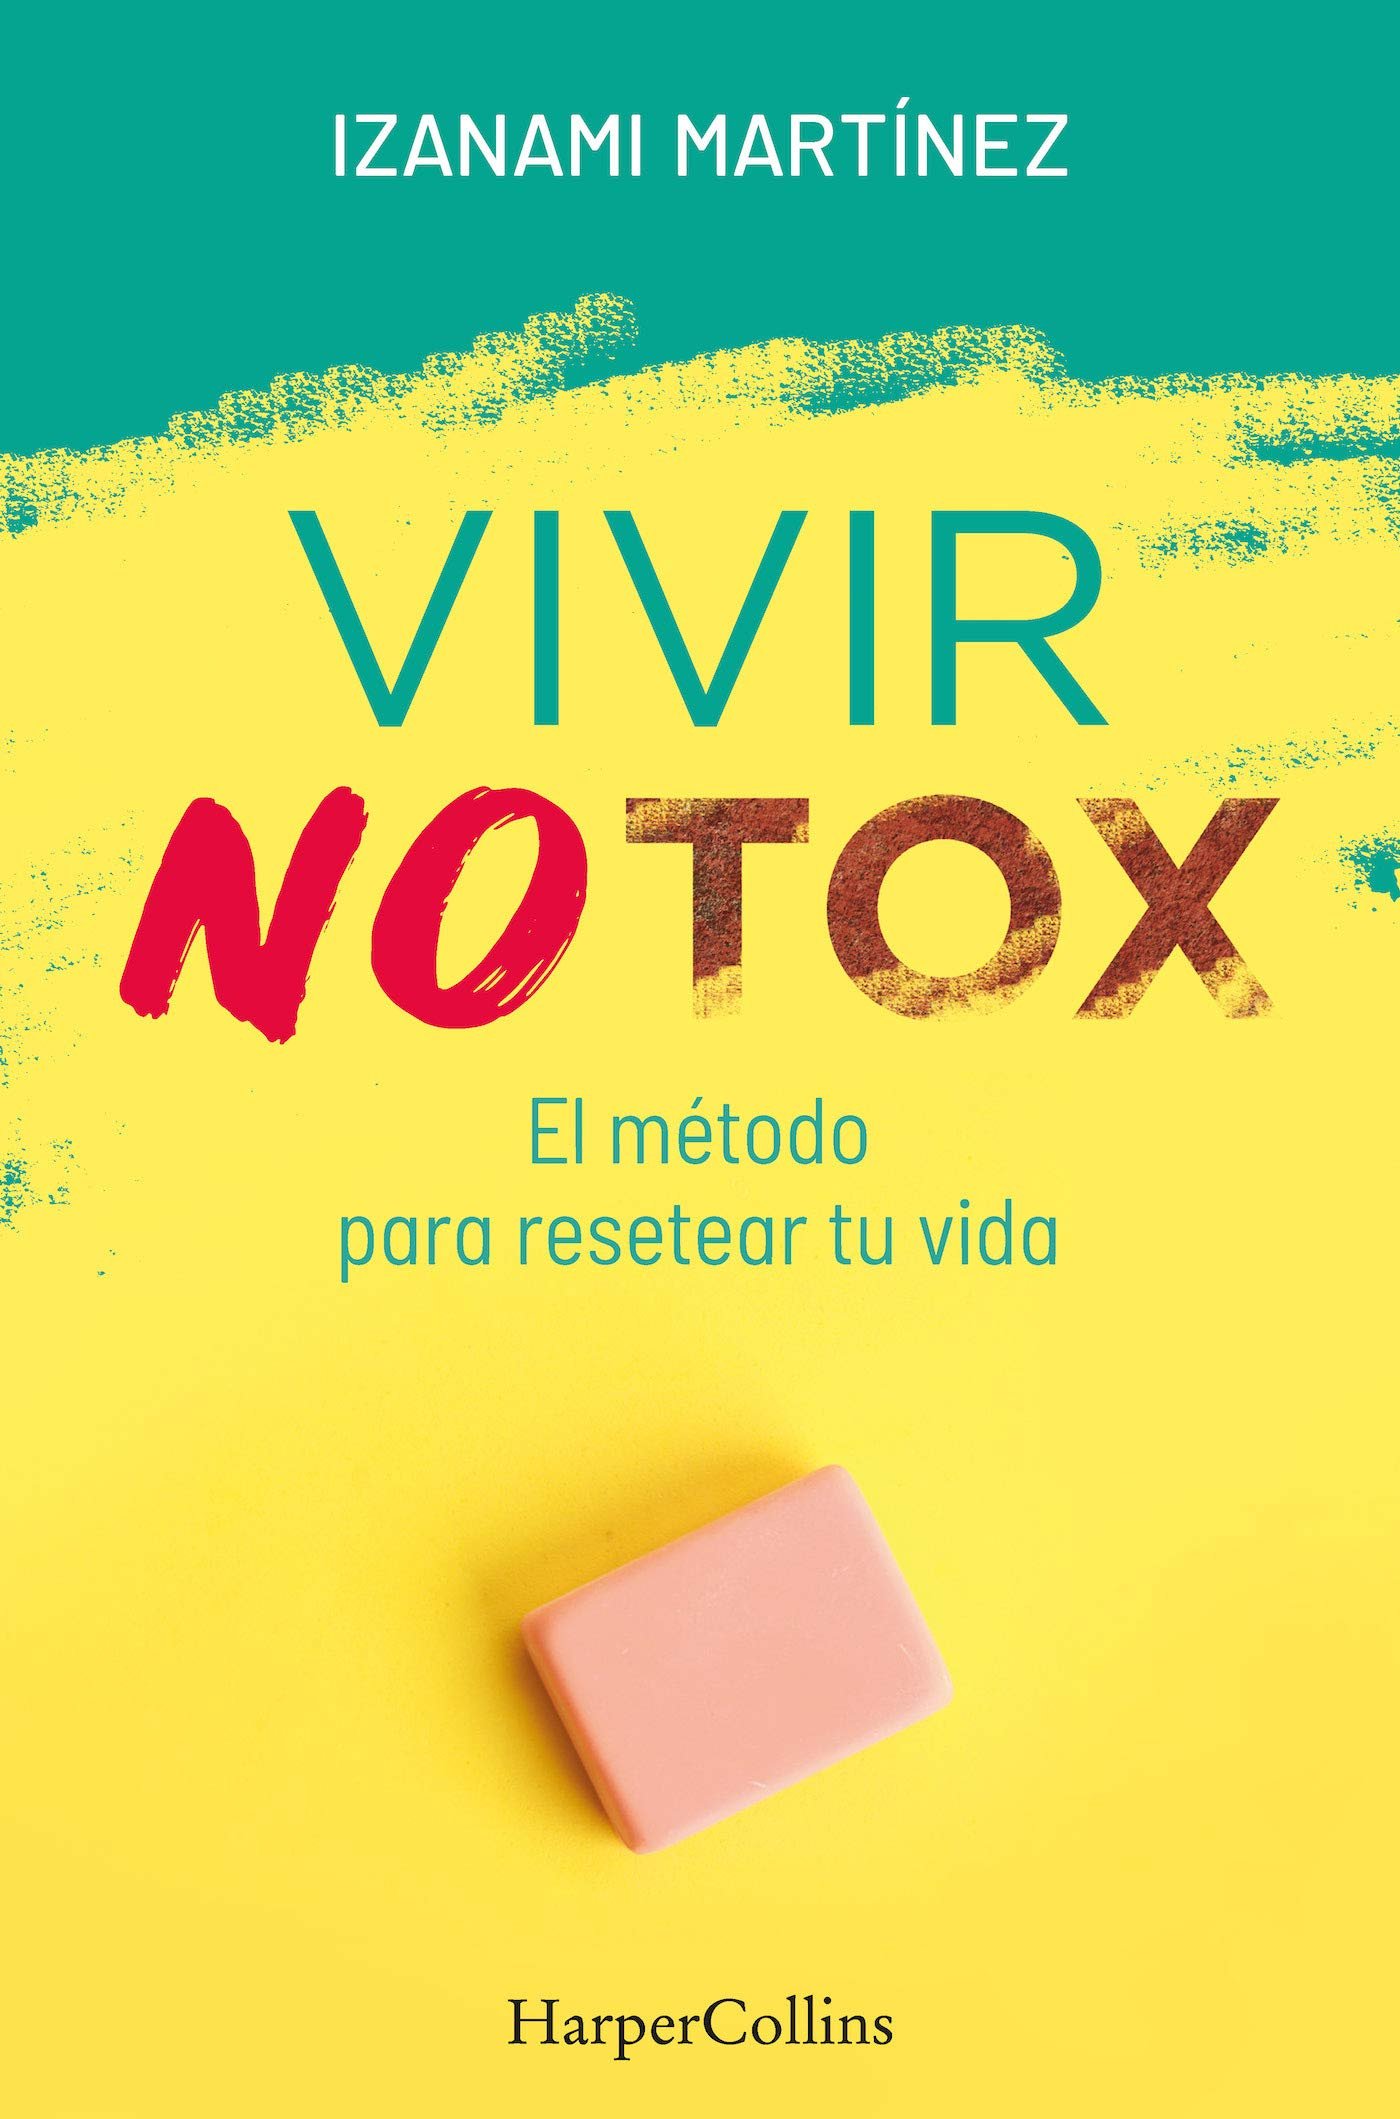 Vivir Notox disponible en Amazon